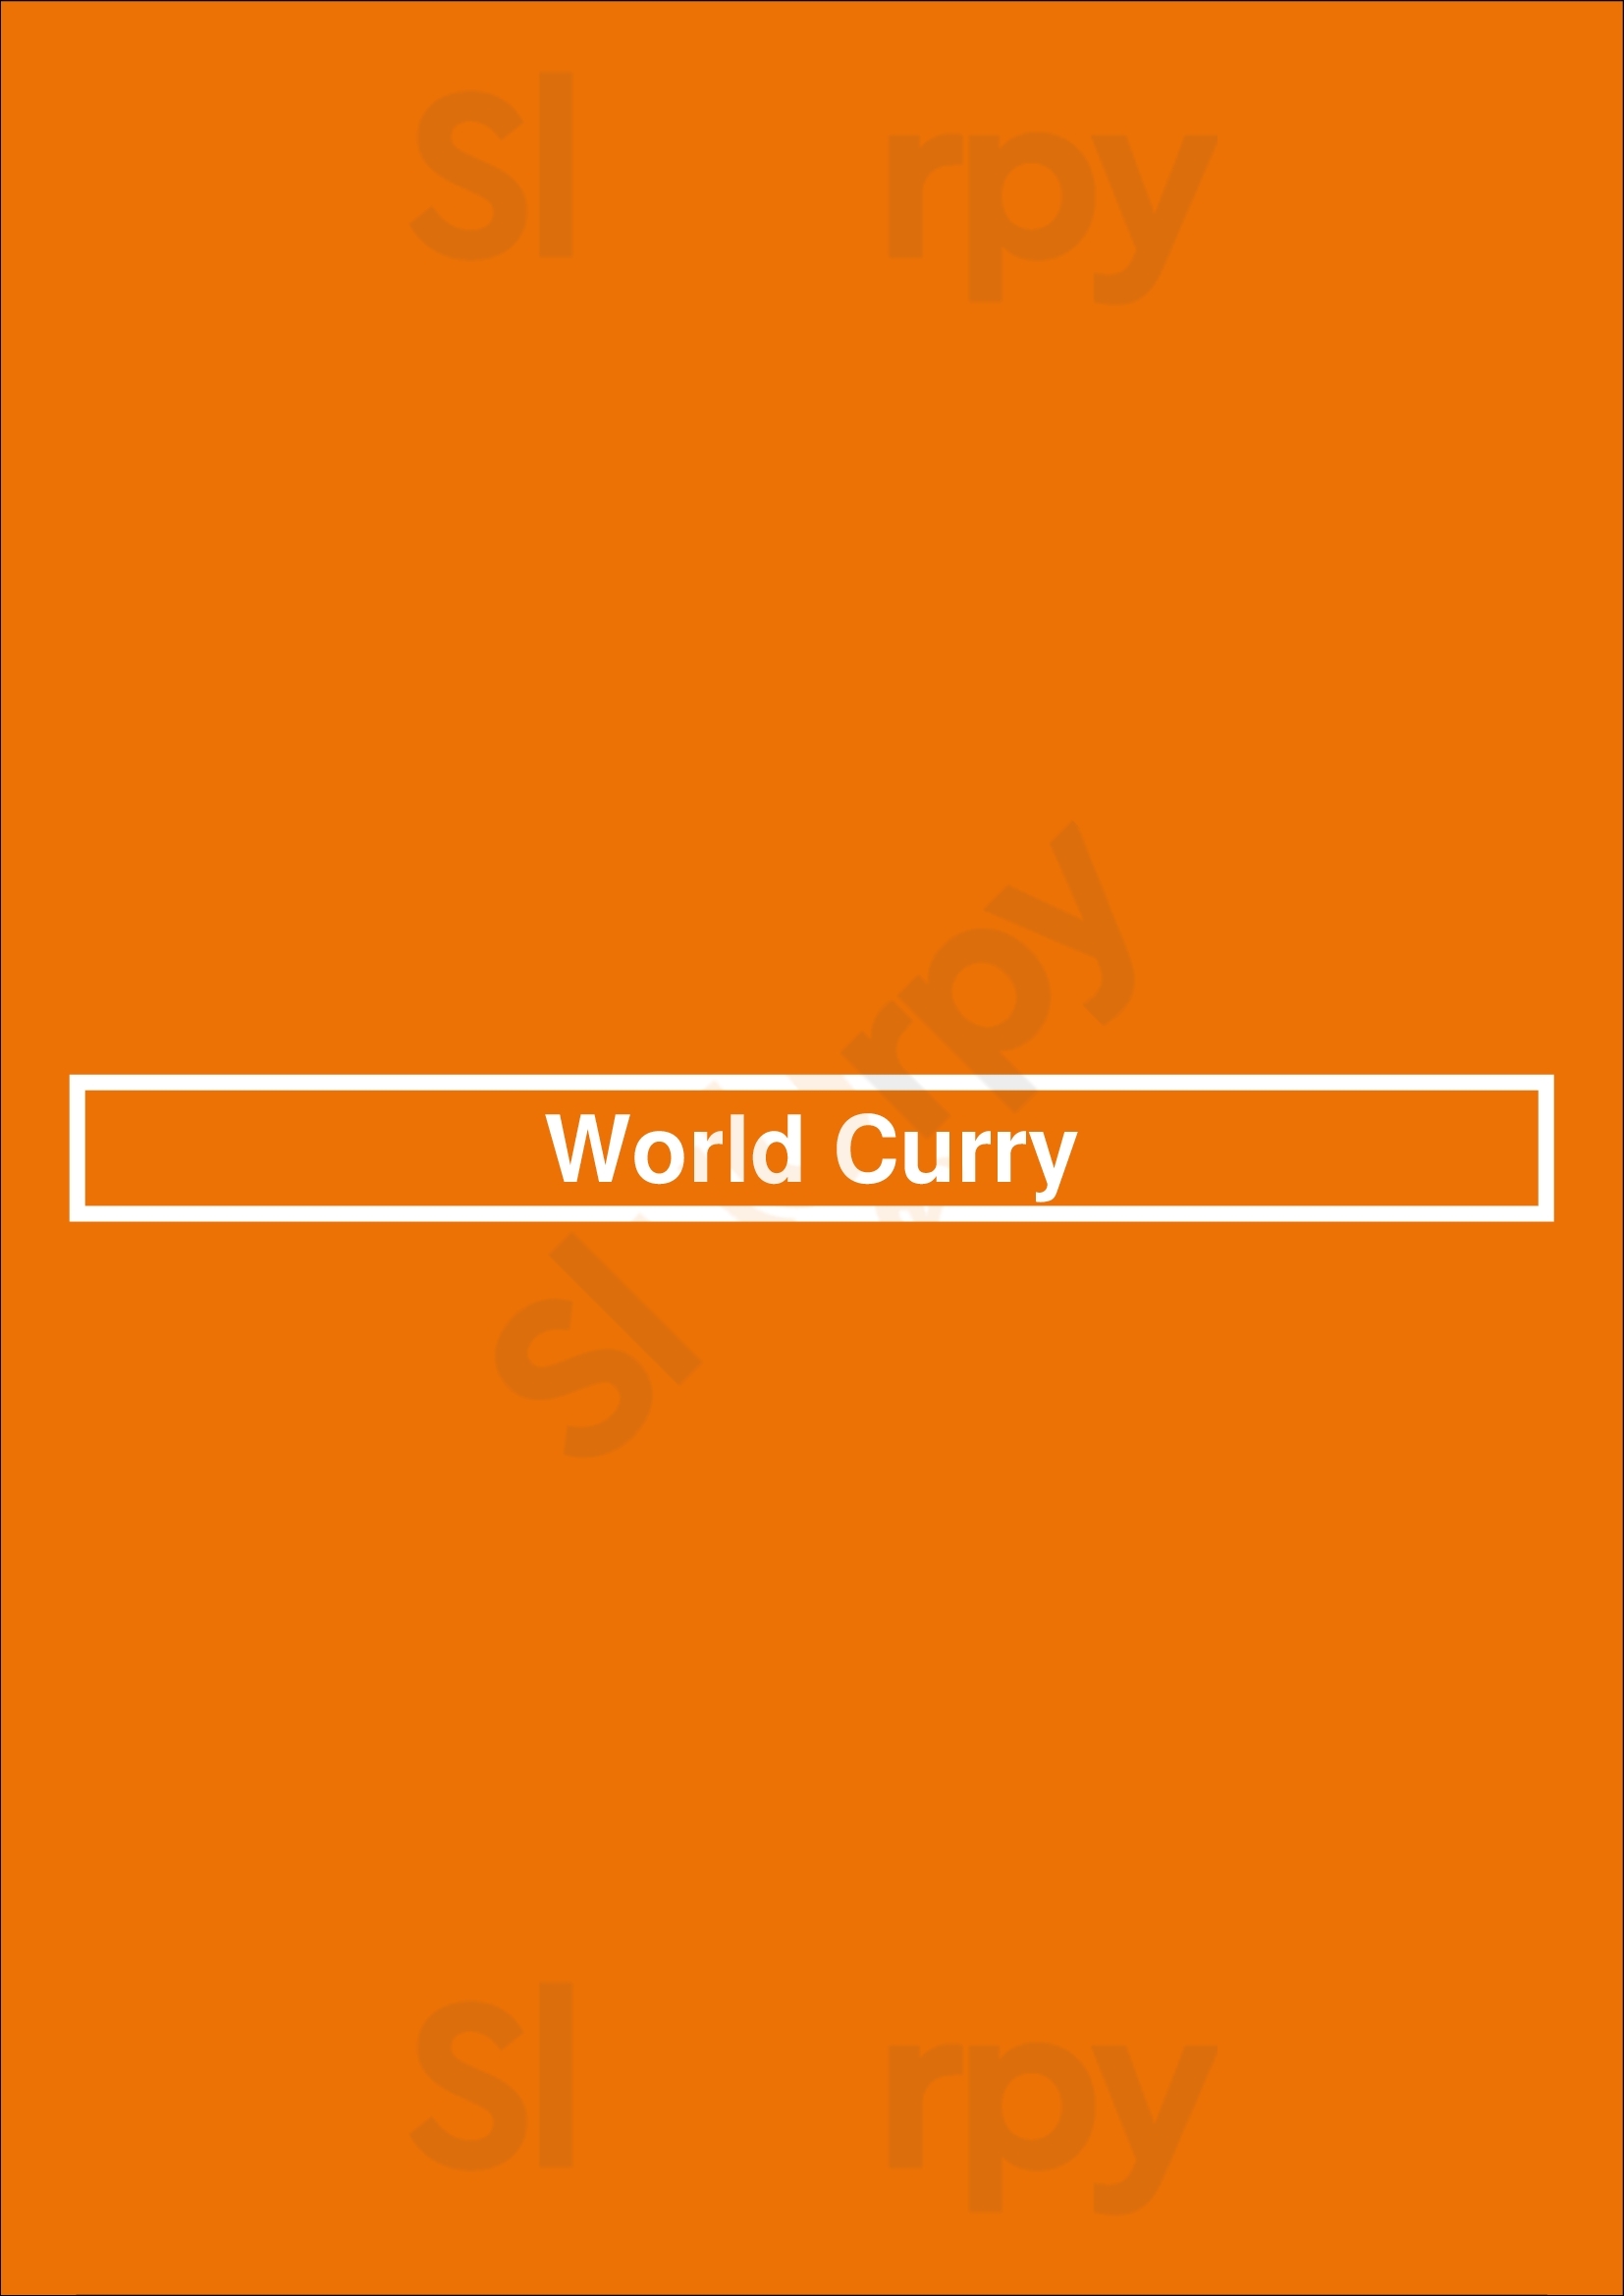 World Curry San Diego Menu - 1